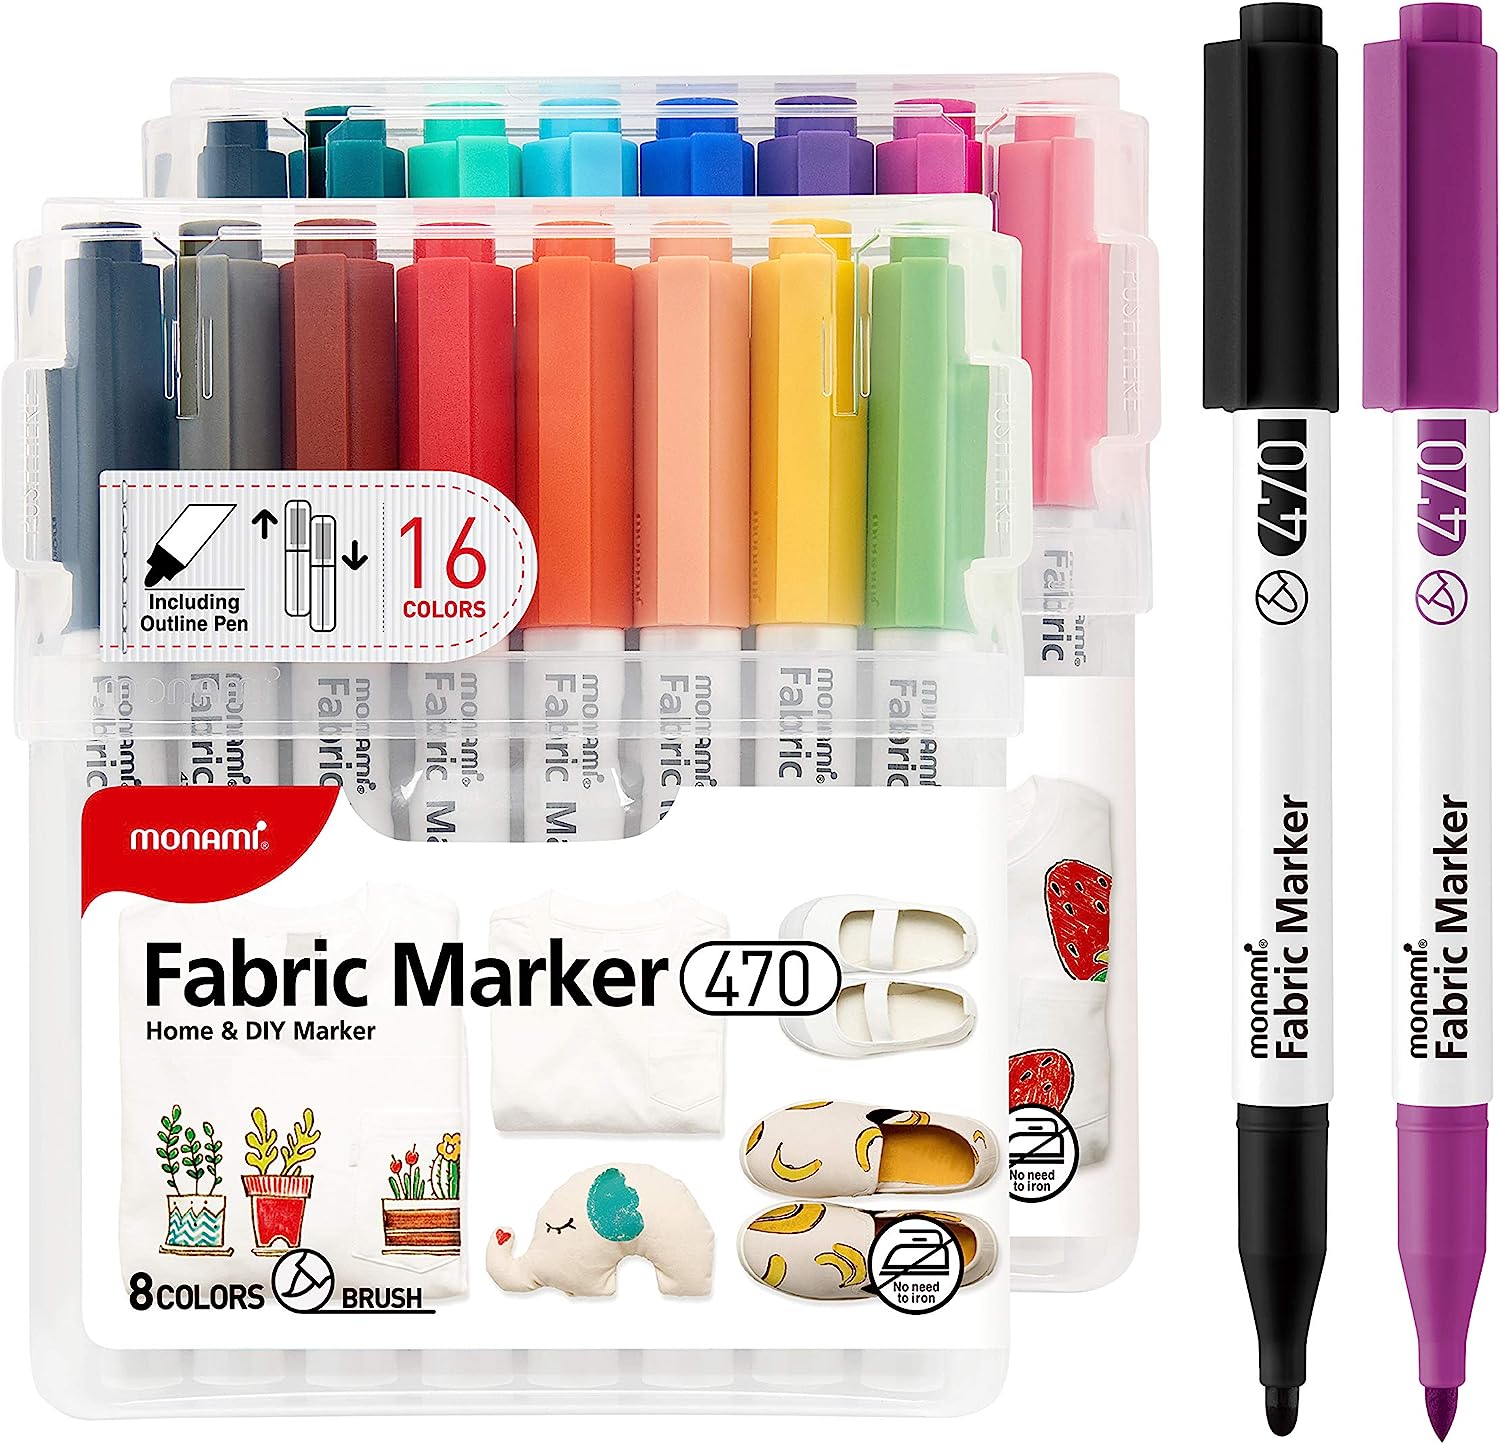 MONAMI Fabric Marker 470 (SET A), Brush Tip, No [...]